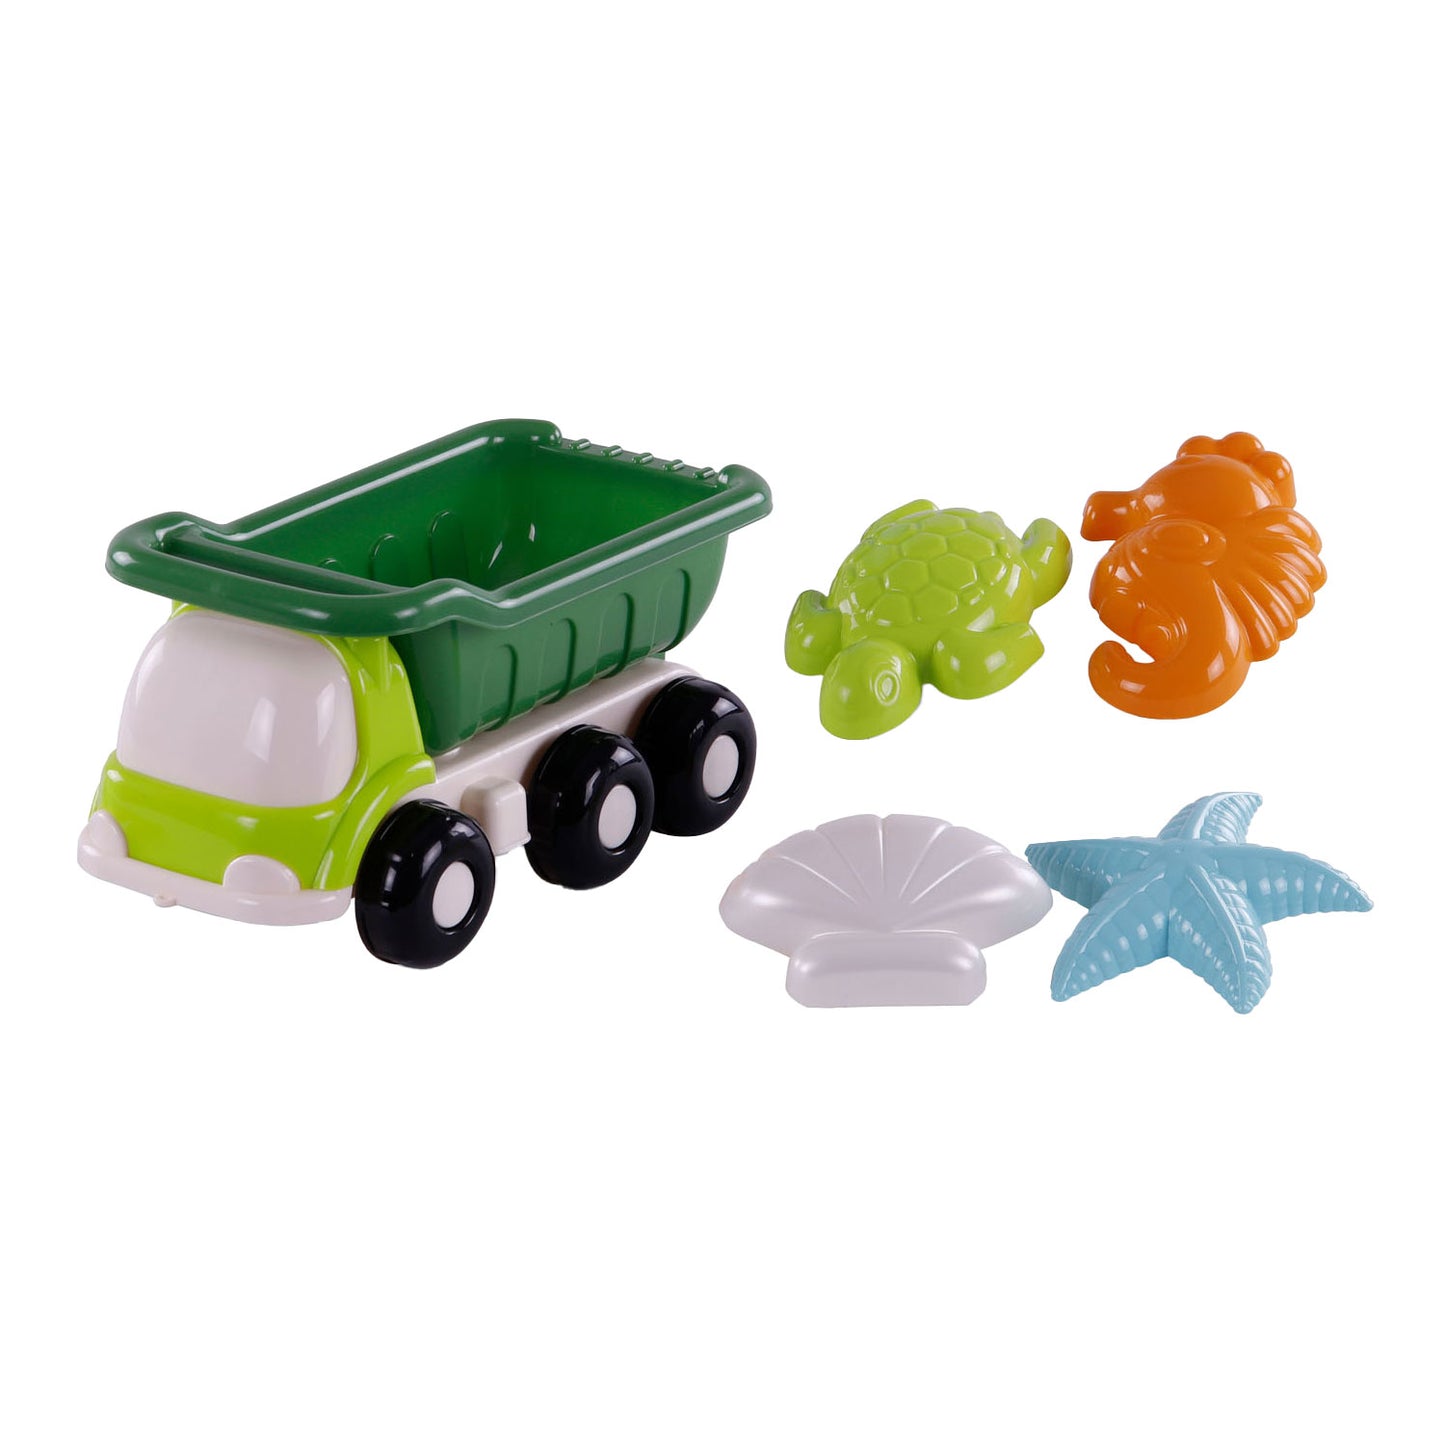 Cavallino Toys Cavallino Beach Kiepwagen con 4 forme di sabbia verde